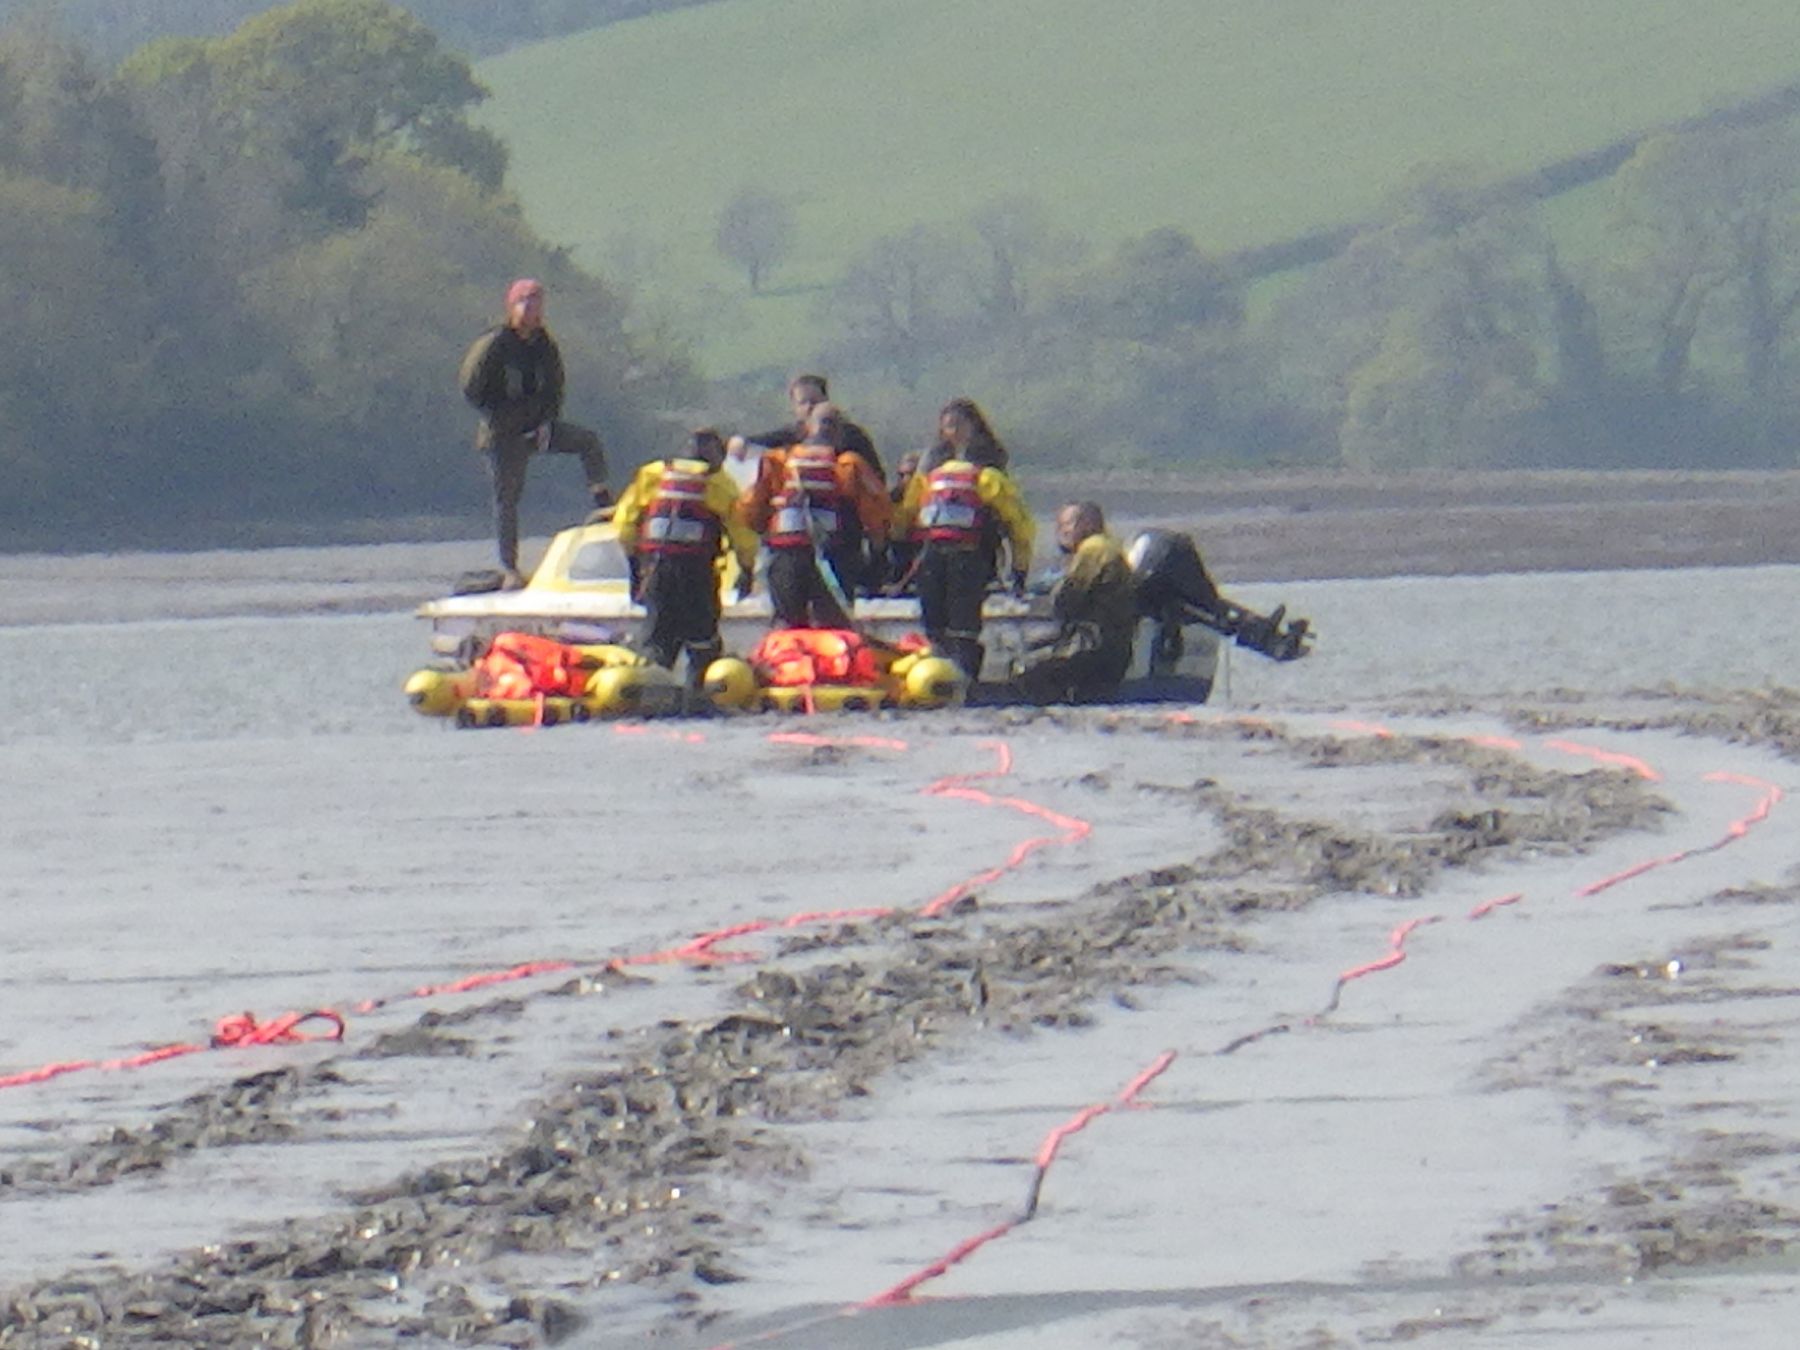 Coastguard technicians preparing to embark 3 casualties to a rescue raft.